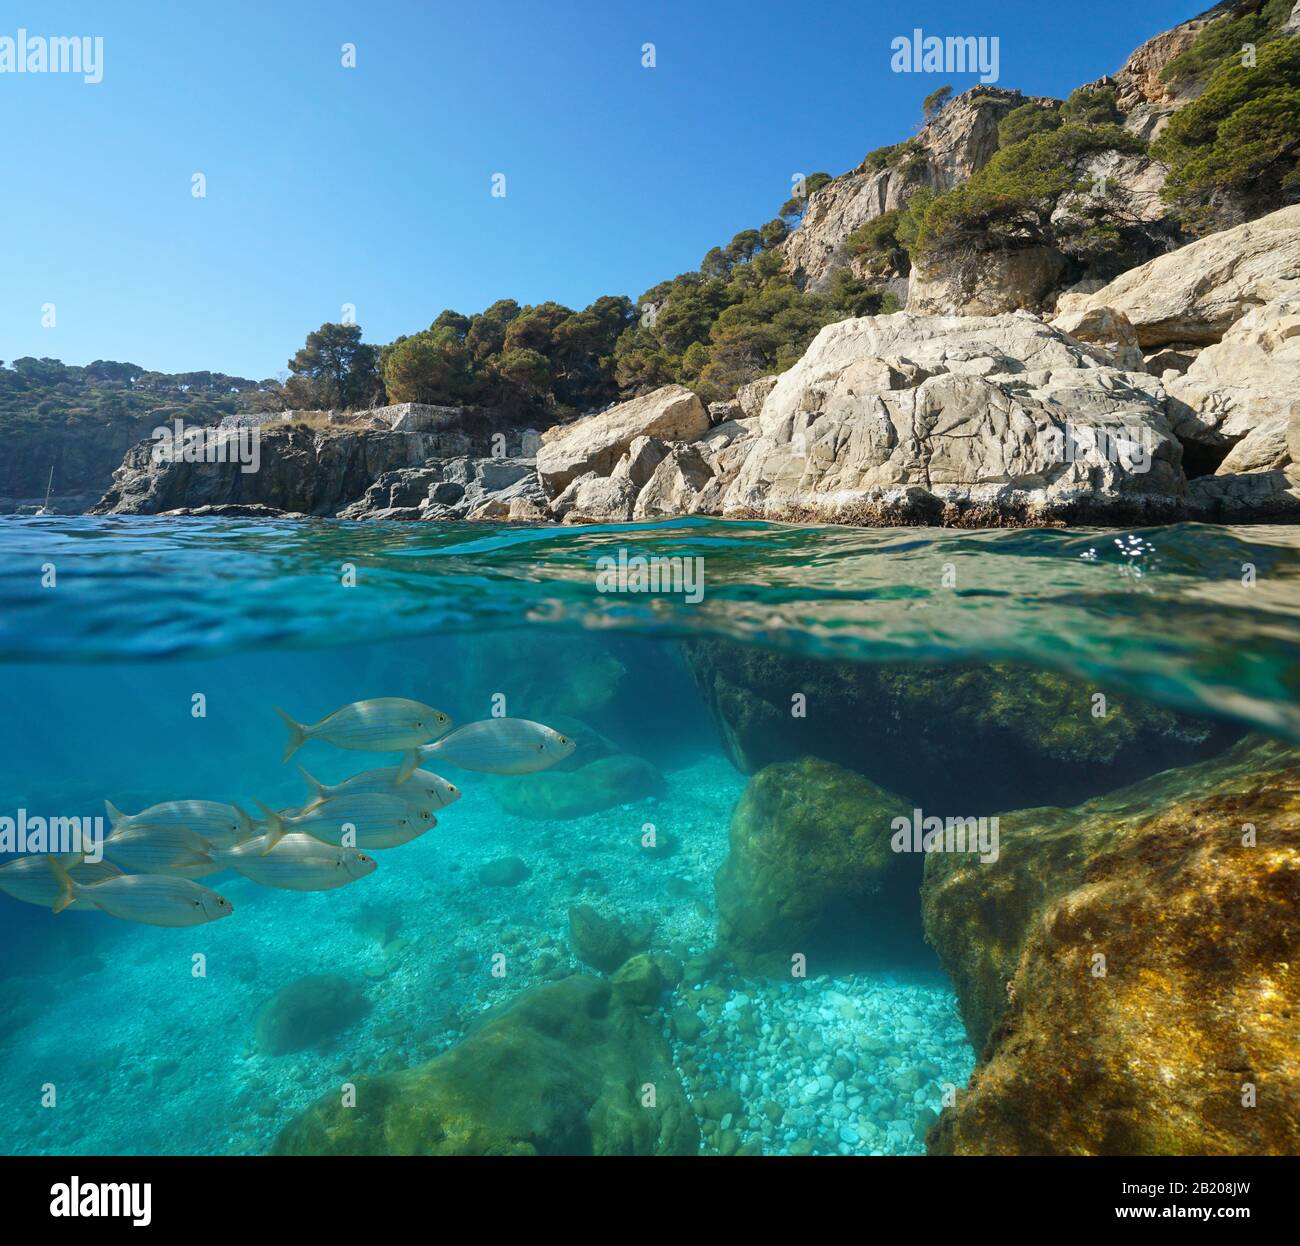 Mare Mediterraneo, costa rocciosa con pesce sott'acqua, vista su e sotto la superficie dell'acqua, Spagna, Costa Brava, Roses, Catalogna Foto Stock